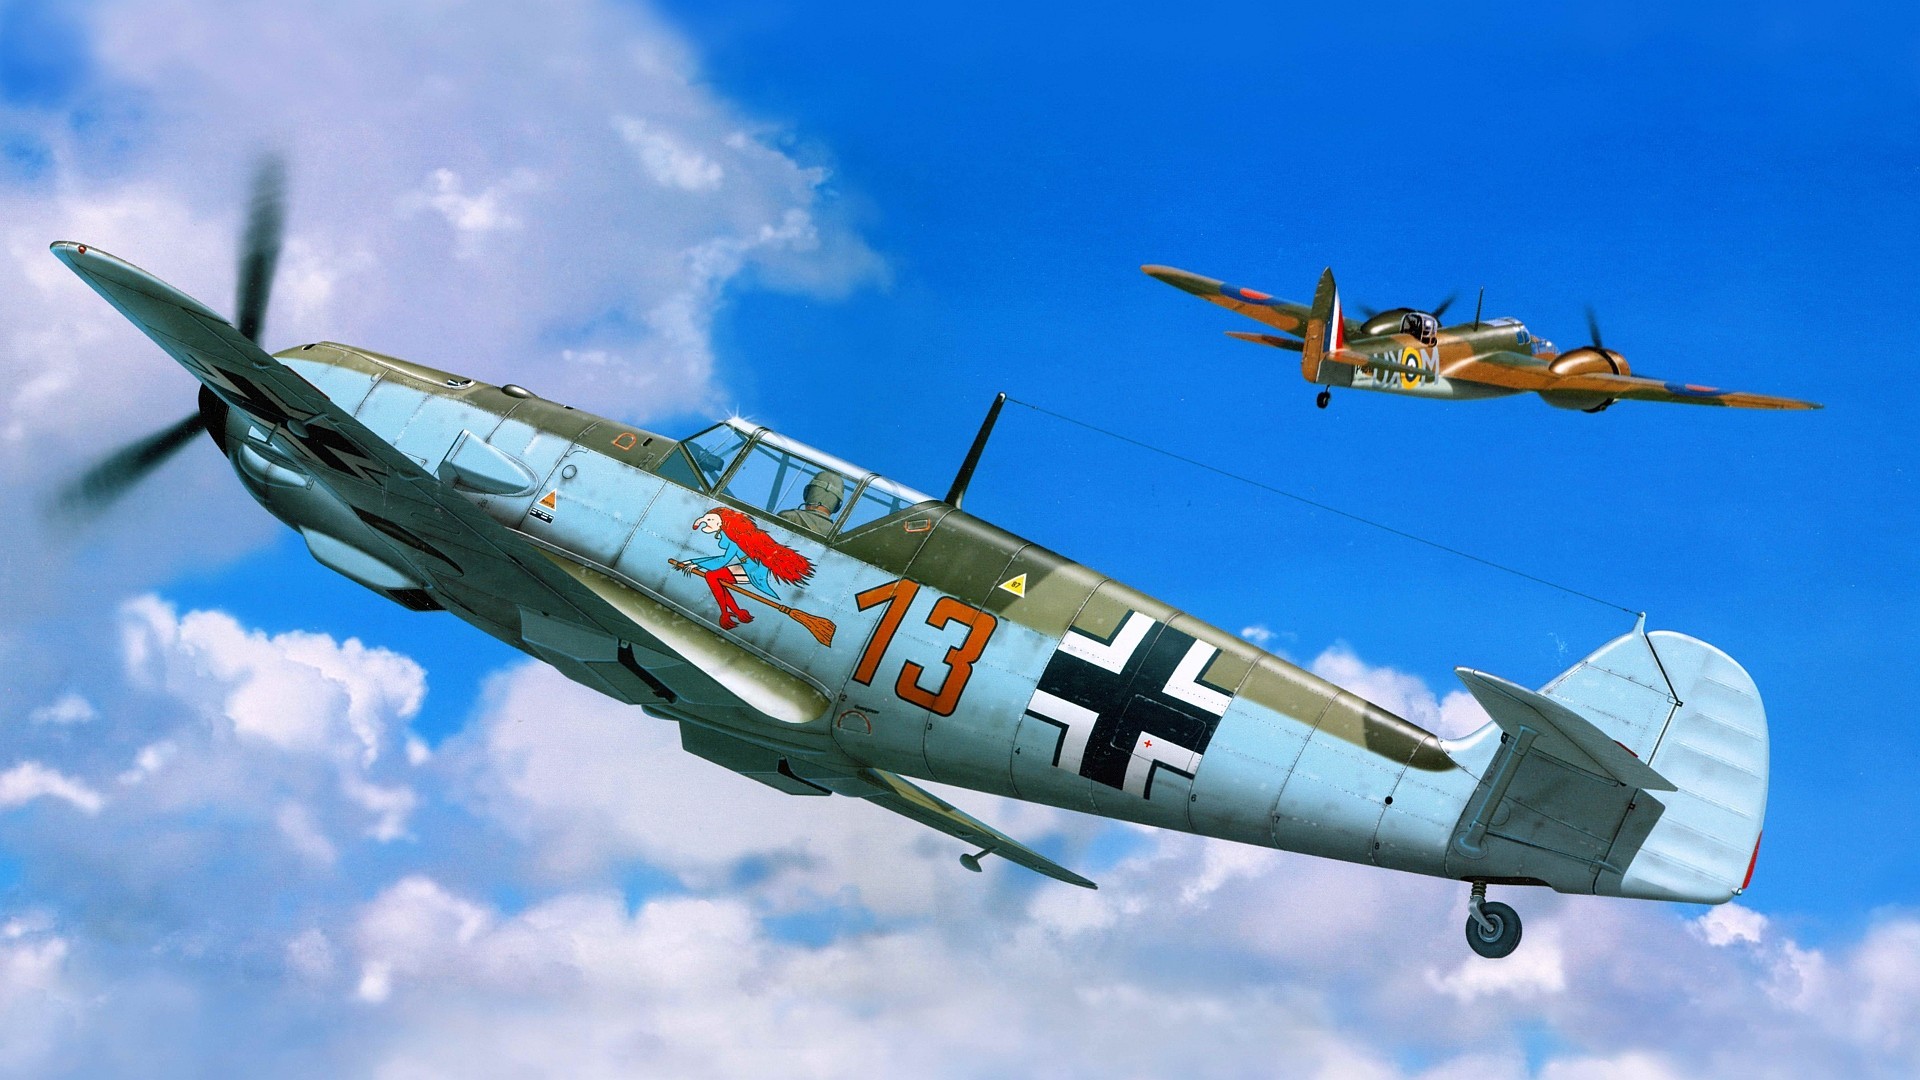 Messerschmitt, Messerschmitt Bf 109, Luftwaffe, Artwork, Military Aircraft, World  War II, Germany Wallpapers HD / Desktop and Mobile Backgrounds